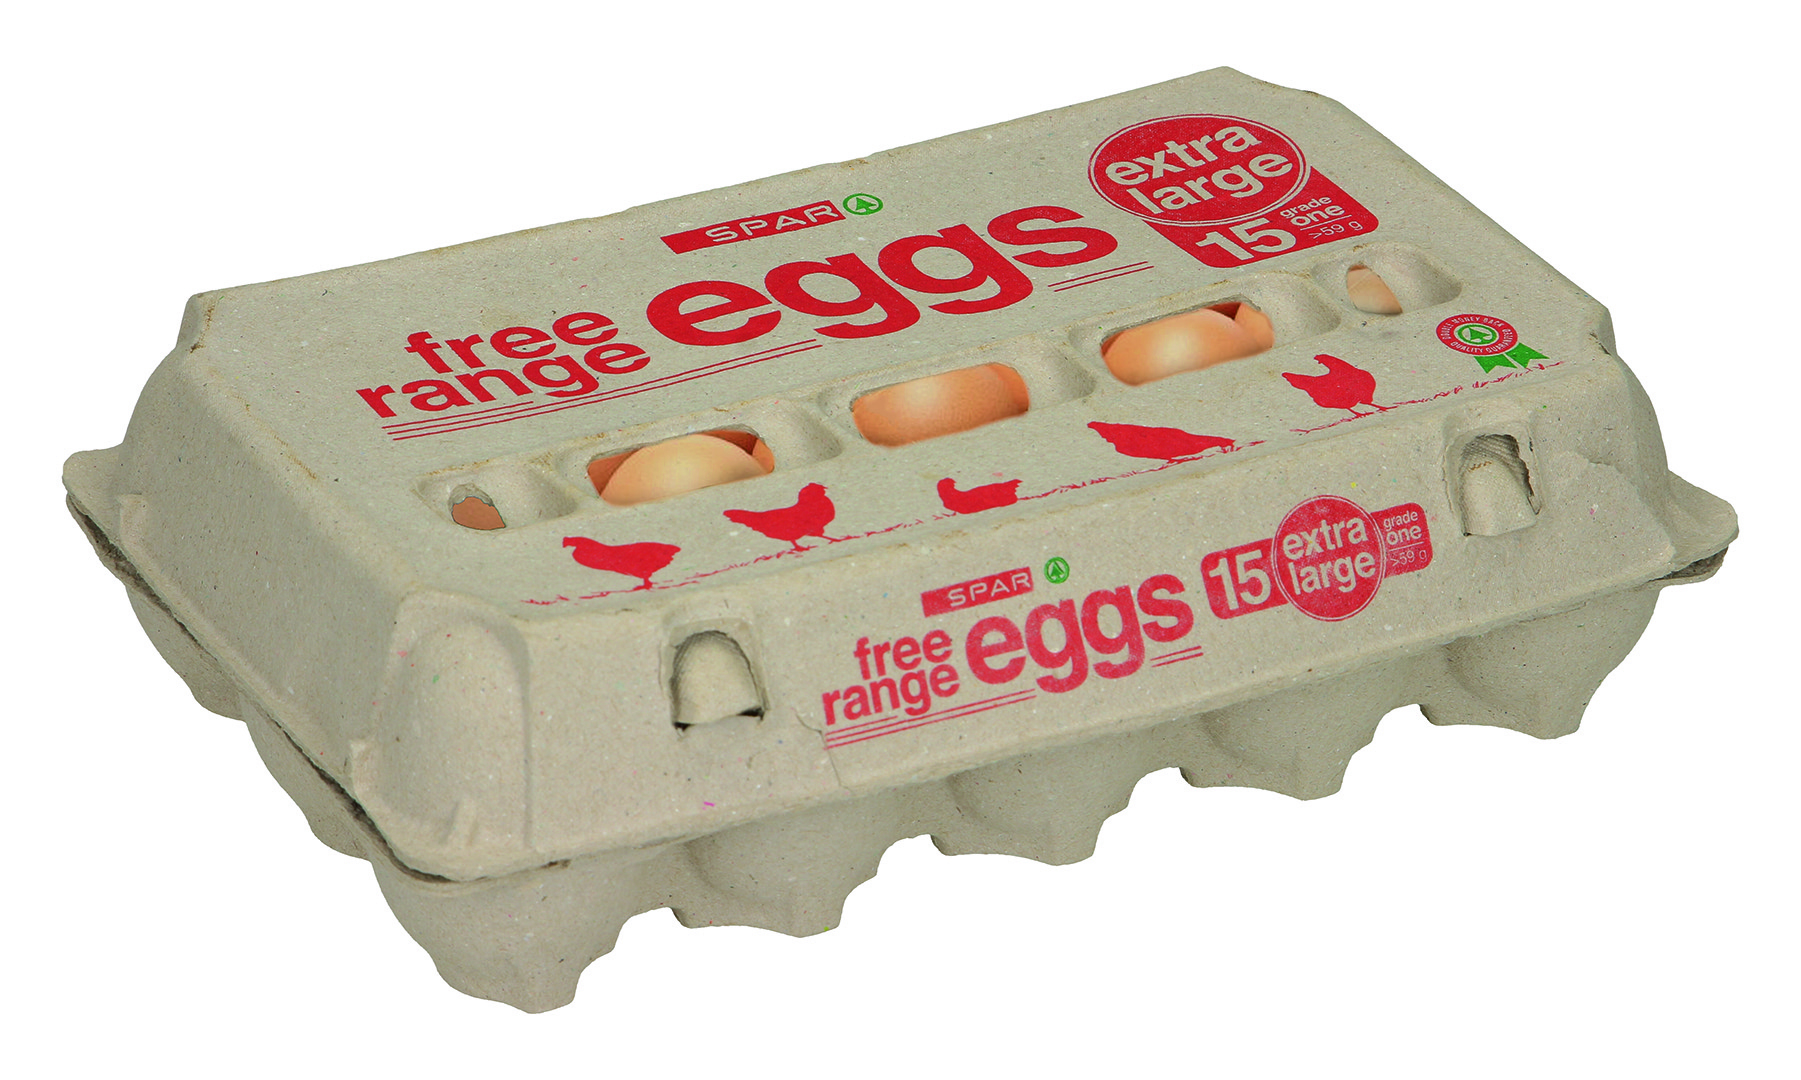 eggs free range extra large 